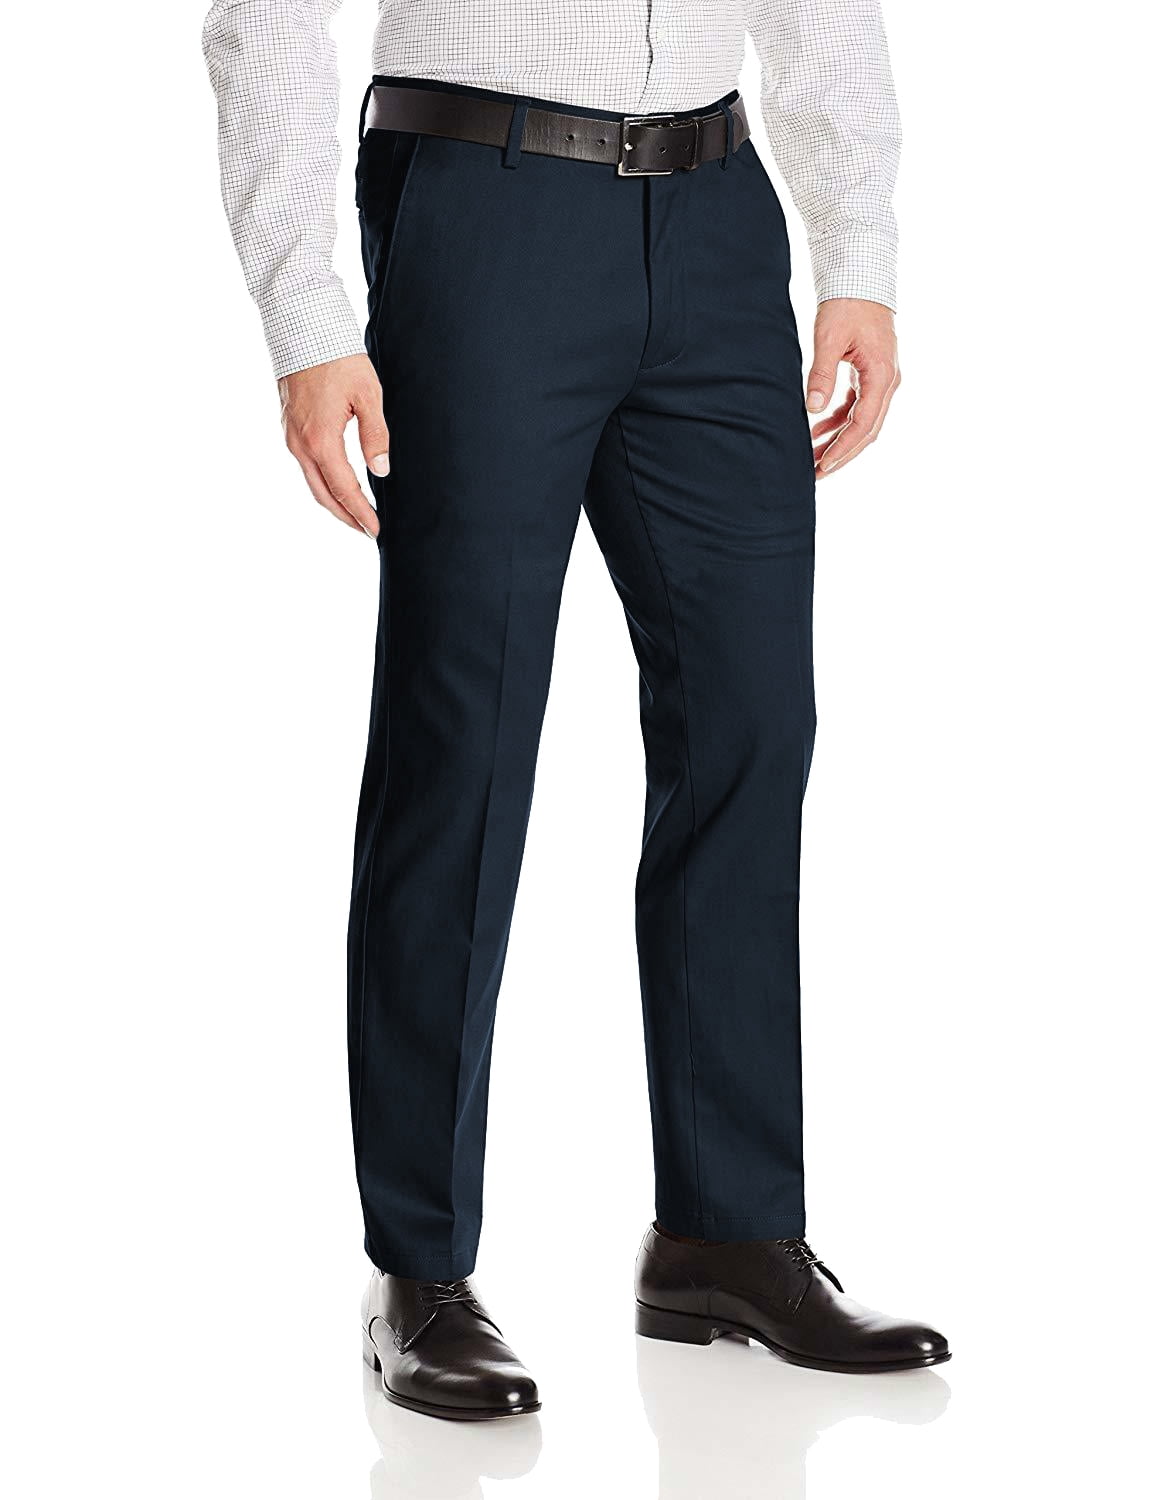 Boltini Italy Men's Flat Front Slim Fit Slacks Trousers Dress Pants (Black,  30x32) 